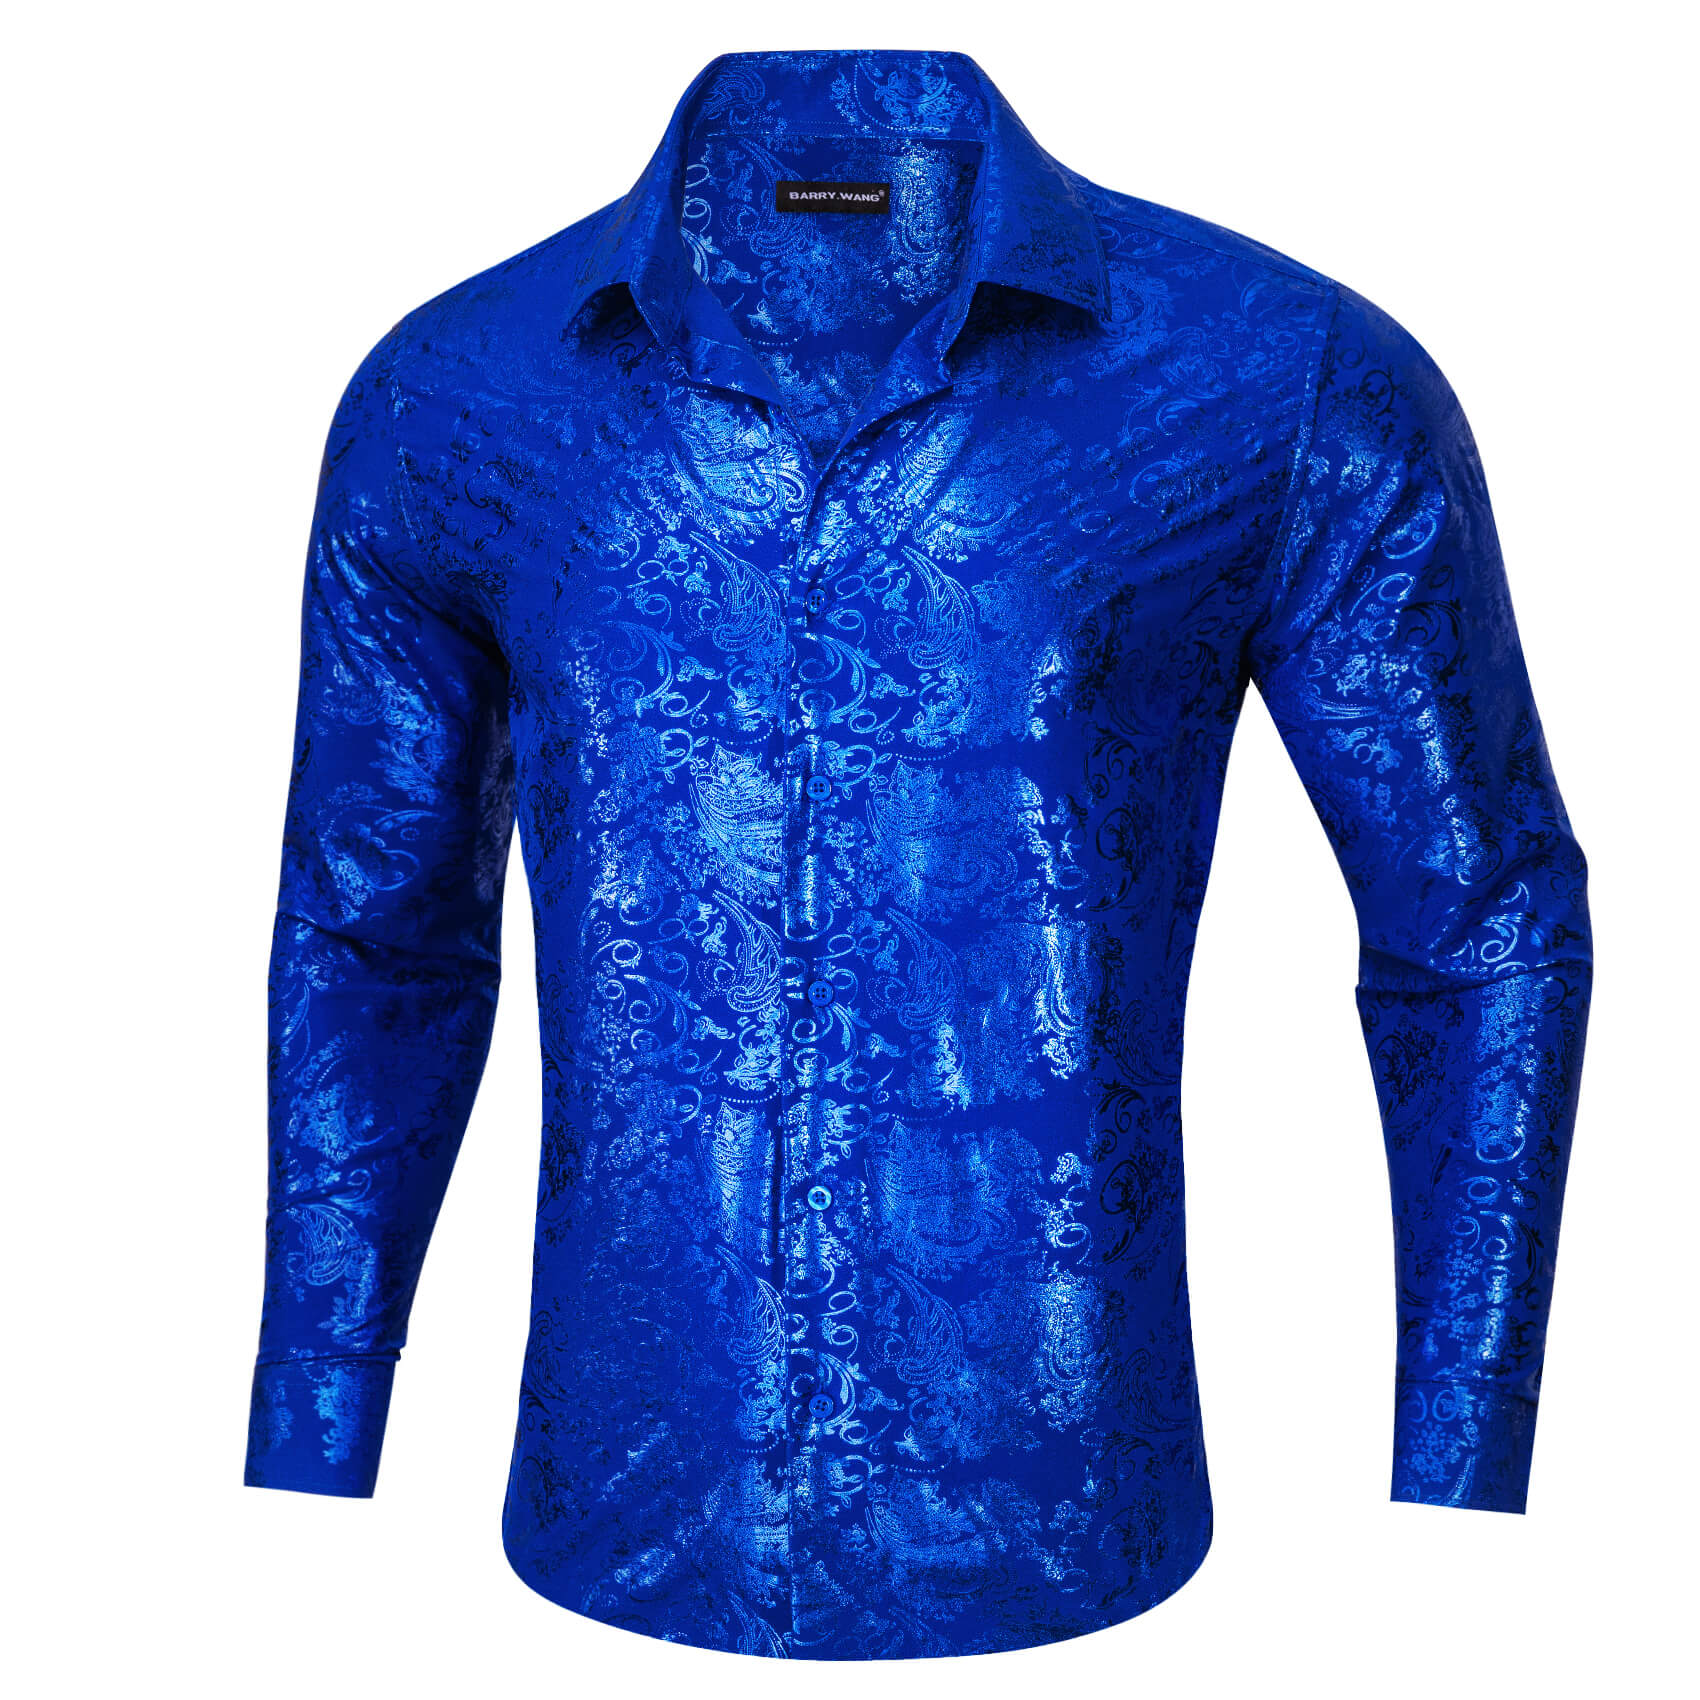 Barry.wang Buttoned Down Shirt Cobalt blue Floral Men's Silk Long Sleeve Shirt